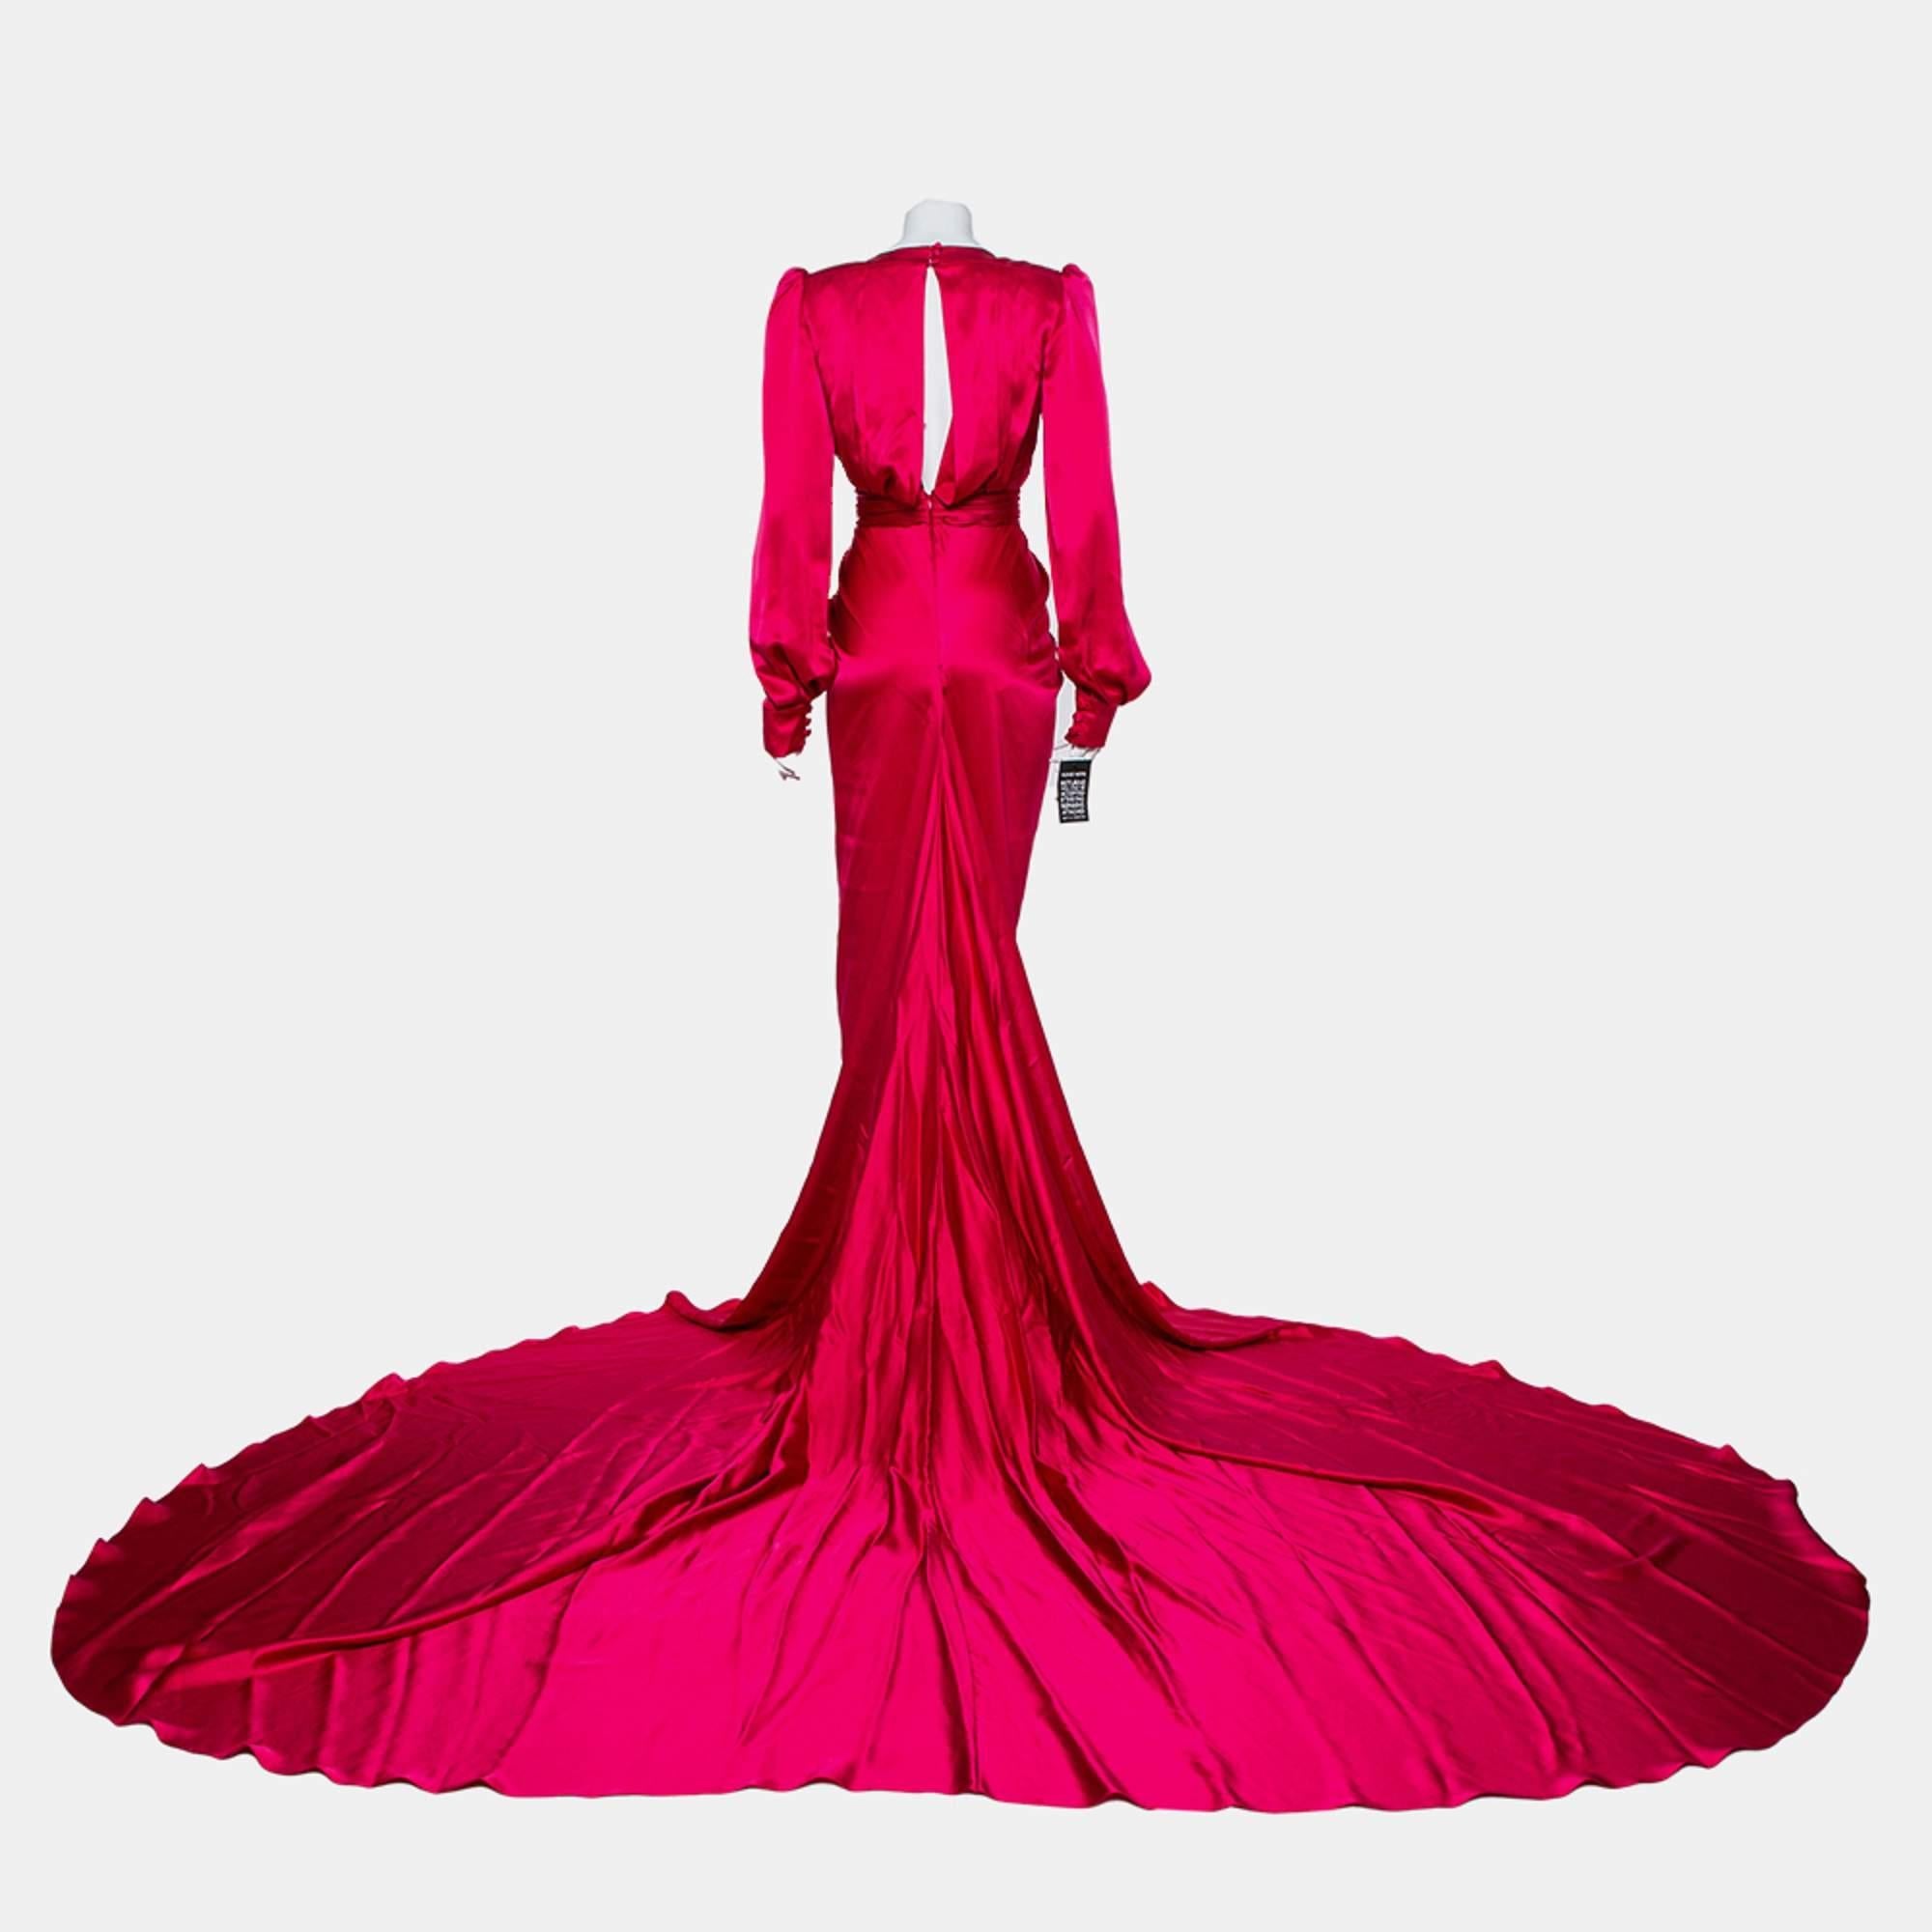 Créez les looks les plus époustouflants sur le tapis rouge en portant cette magnifique robe Ong-Oaj Pairam Angelica, digne d'une diva. Conçue en satin rose, cette robe présente une silhouette plissée avec une ceinture à la taille, un décolleté